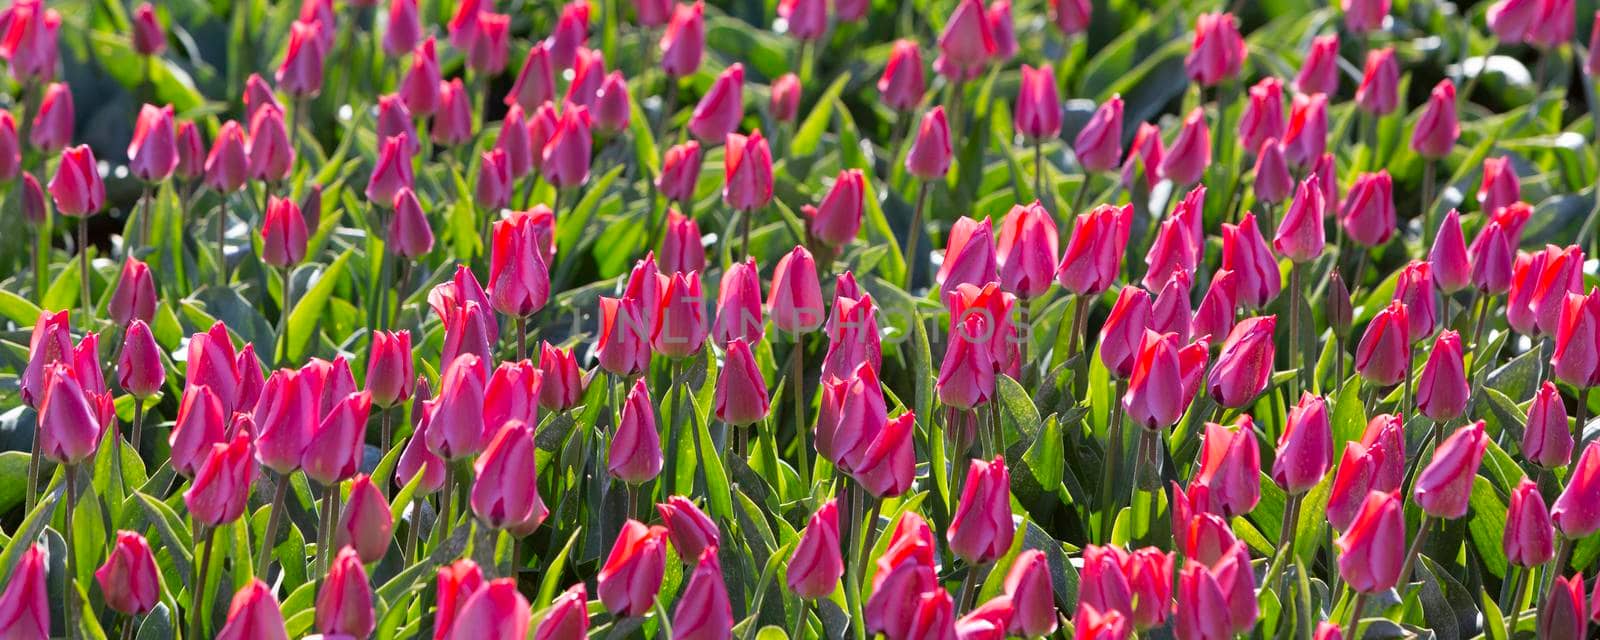 pink tulips in field under blue sky by ahavelaar